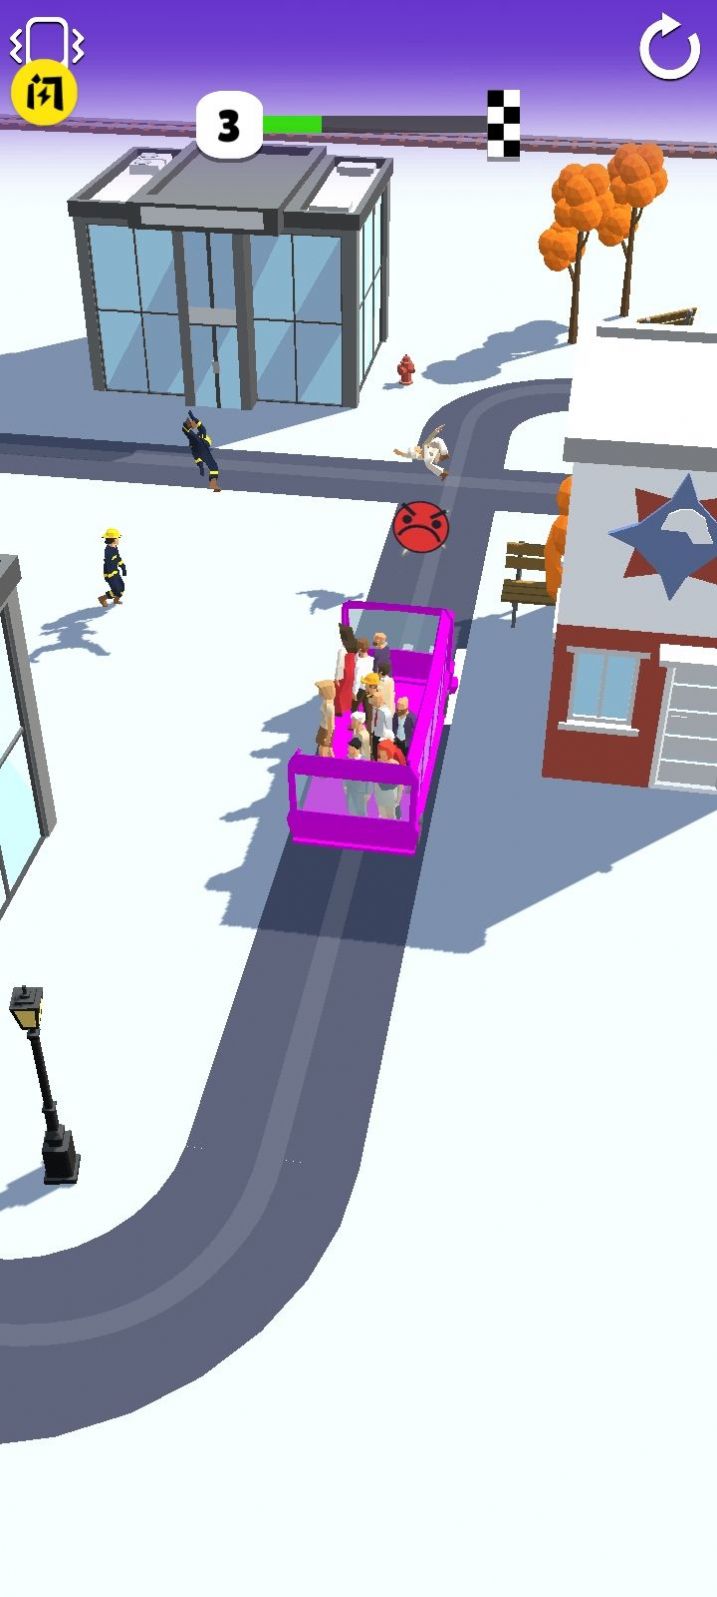 巴士到站3D游戏官方版截图2: